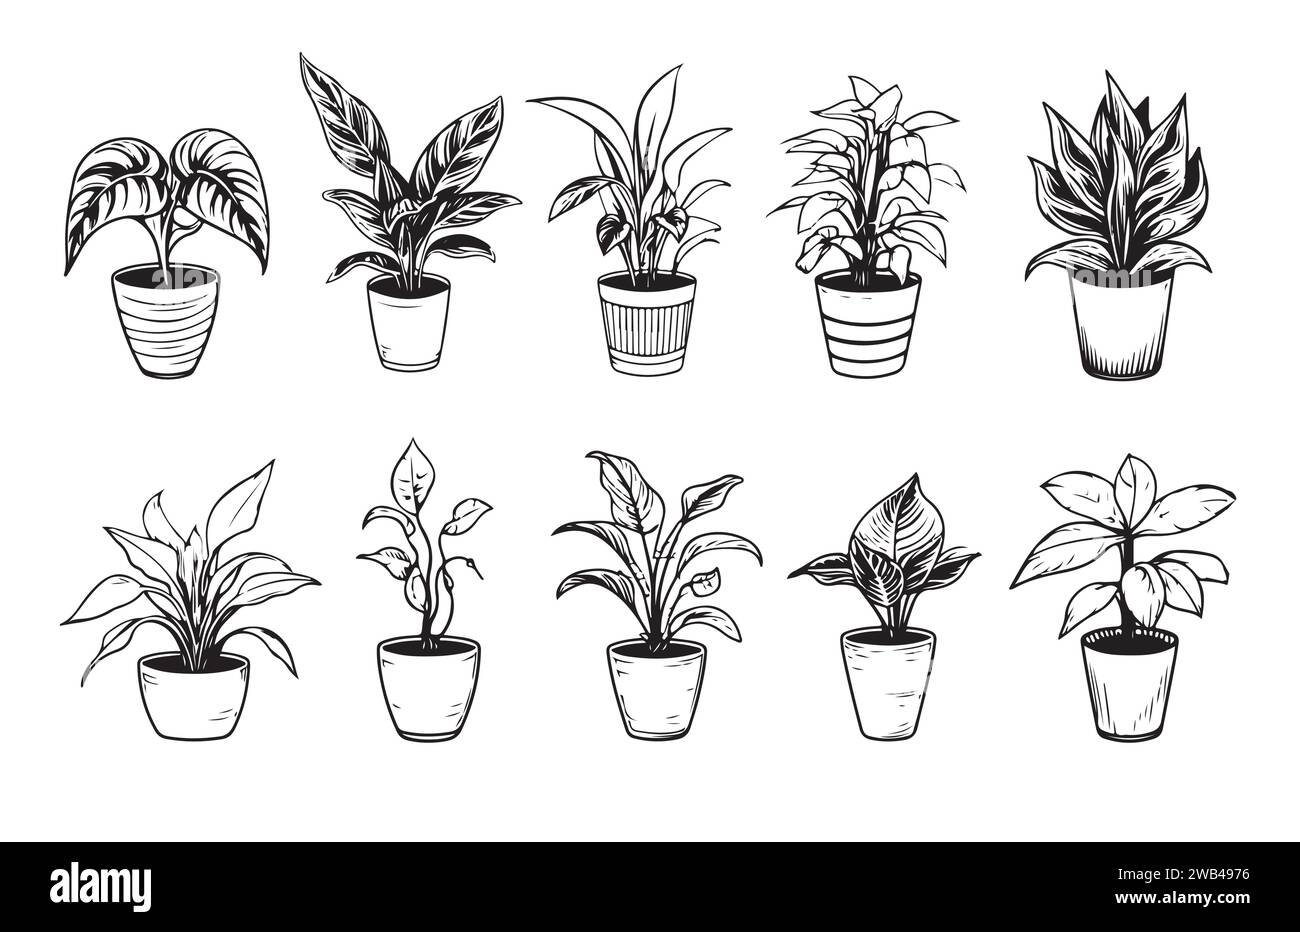 Ensemble de dessins de contour de plantes d'intérieur. Fleurs exotiques d'intérieur en pots Line art. Dracaena, ficus, cactus, plante de serpent pour les plans d'intérieur de la maison, design. Vect Illustration de Vecteur